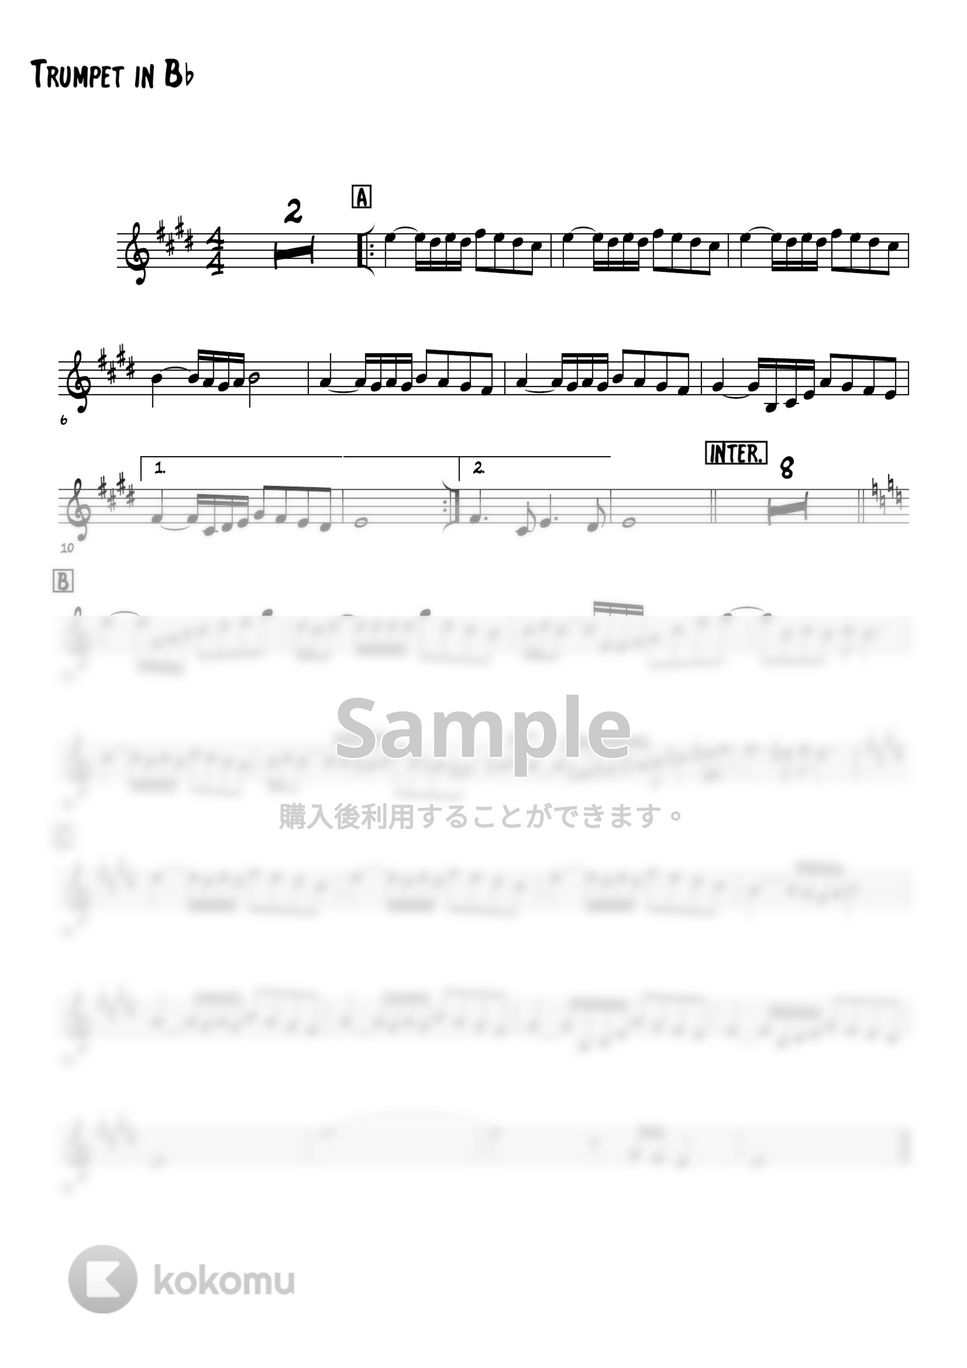 Elvis Costello - She (トランペット（Bb楽器）メロディー楽譜) by 高田将利